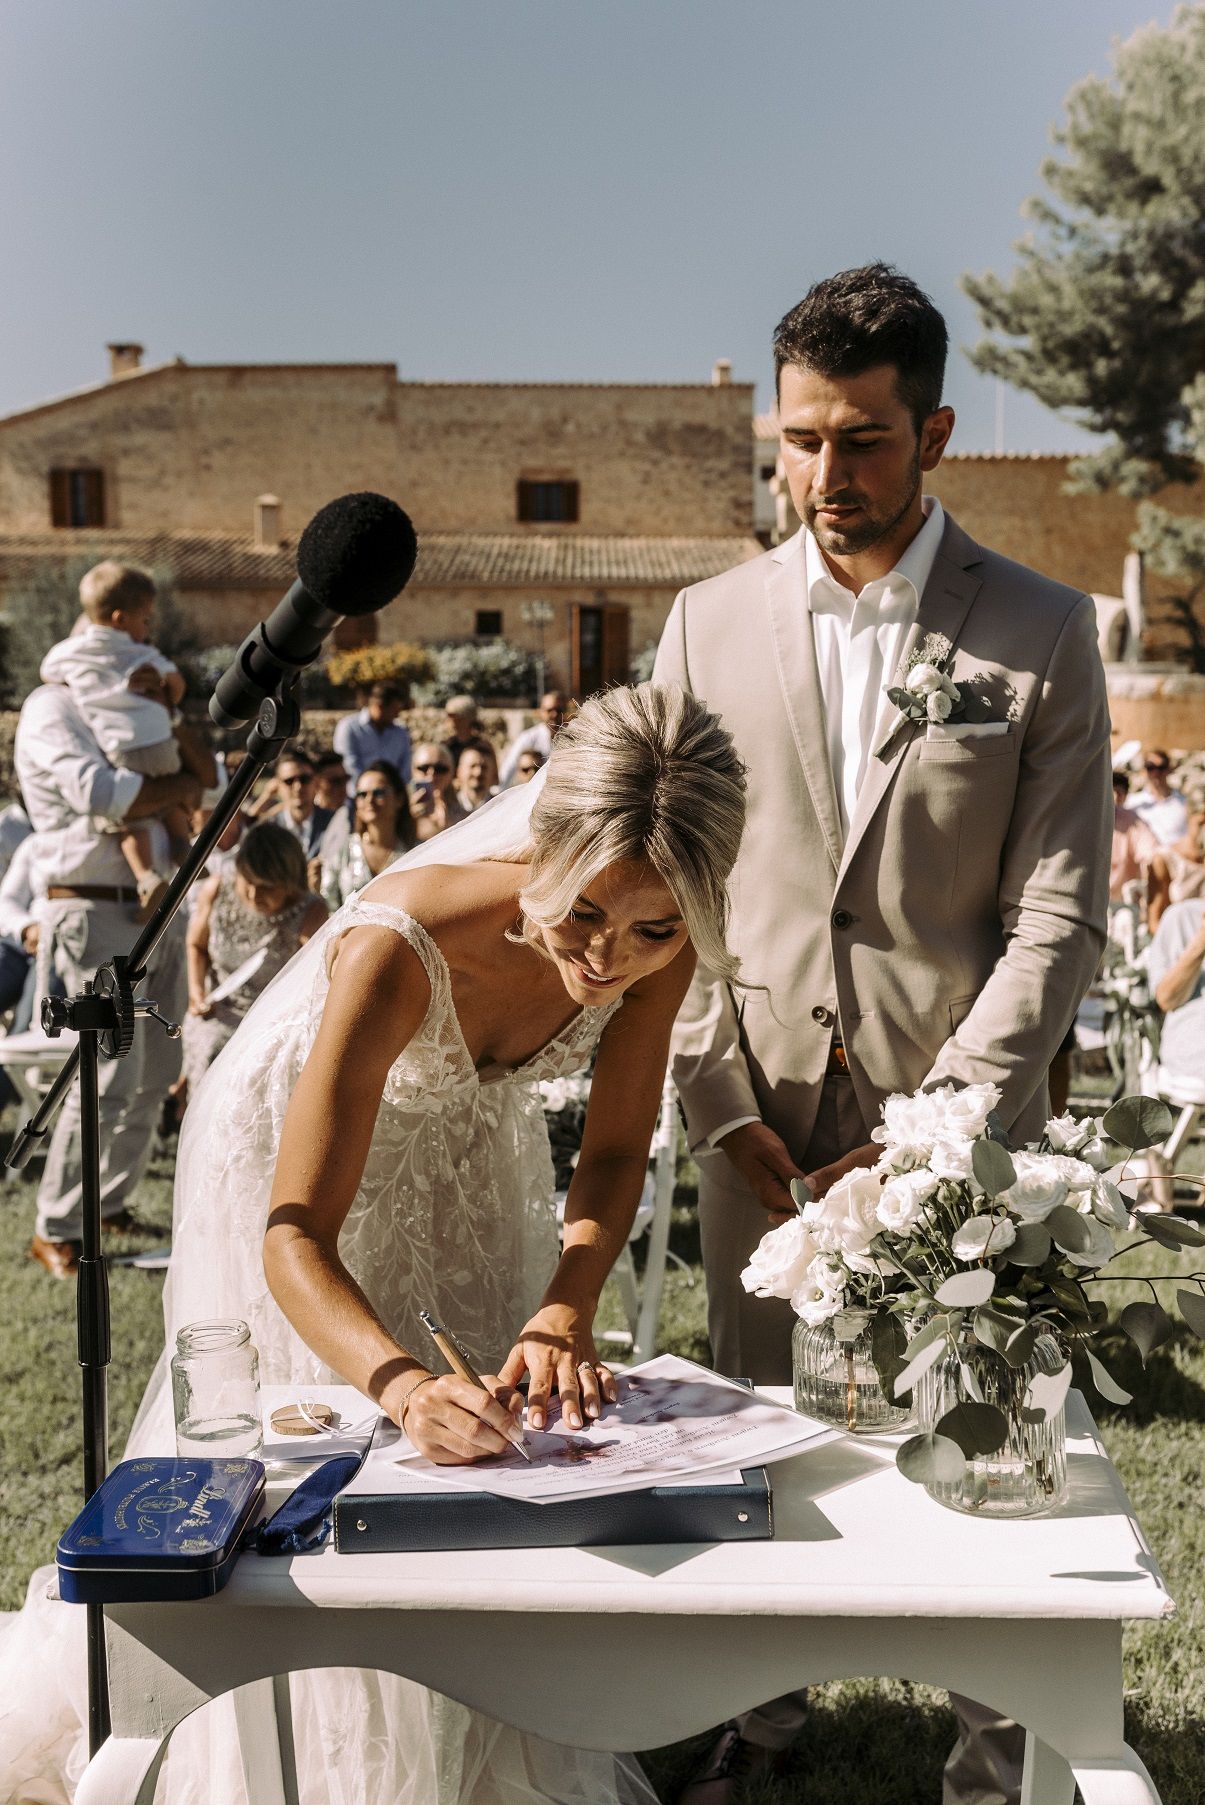 In Spanien wird die katholische Hochzeit automatisch standesamtlich anerkannt.